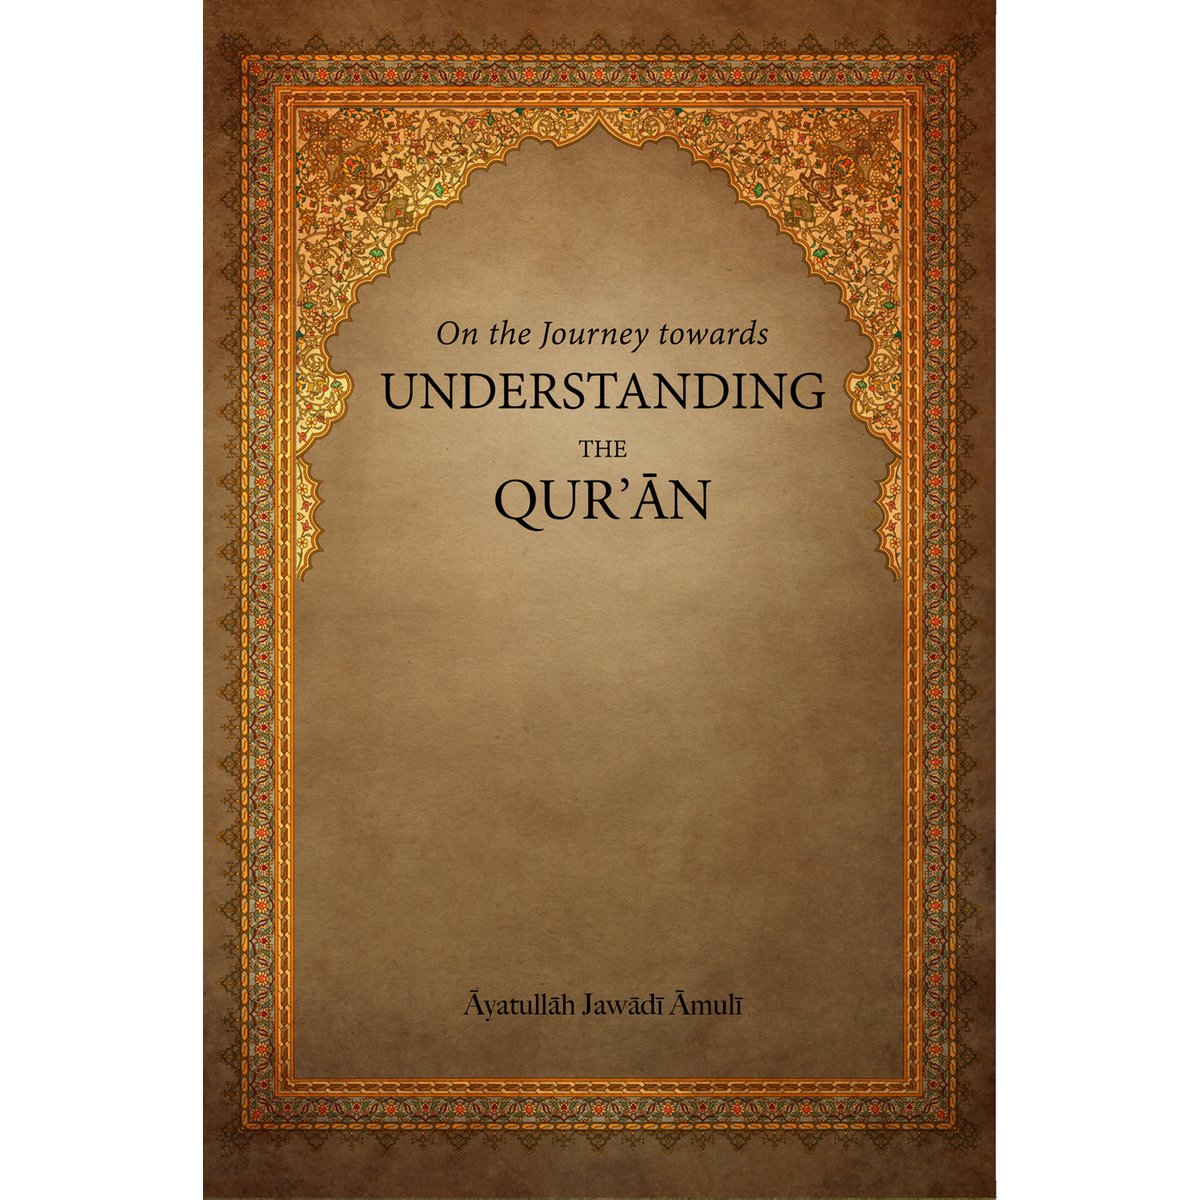 Understanding The Qur’an